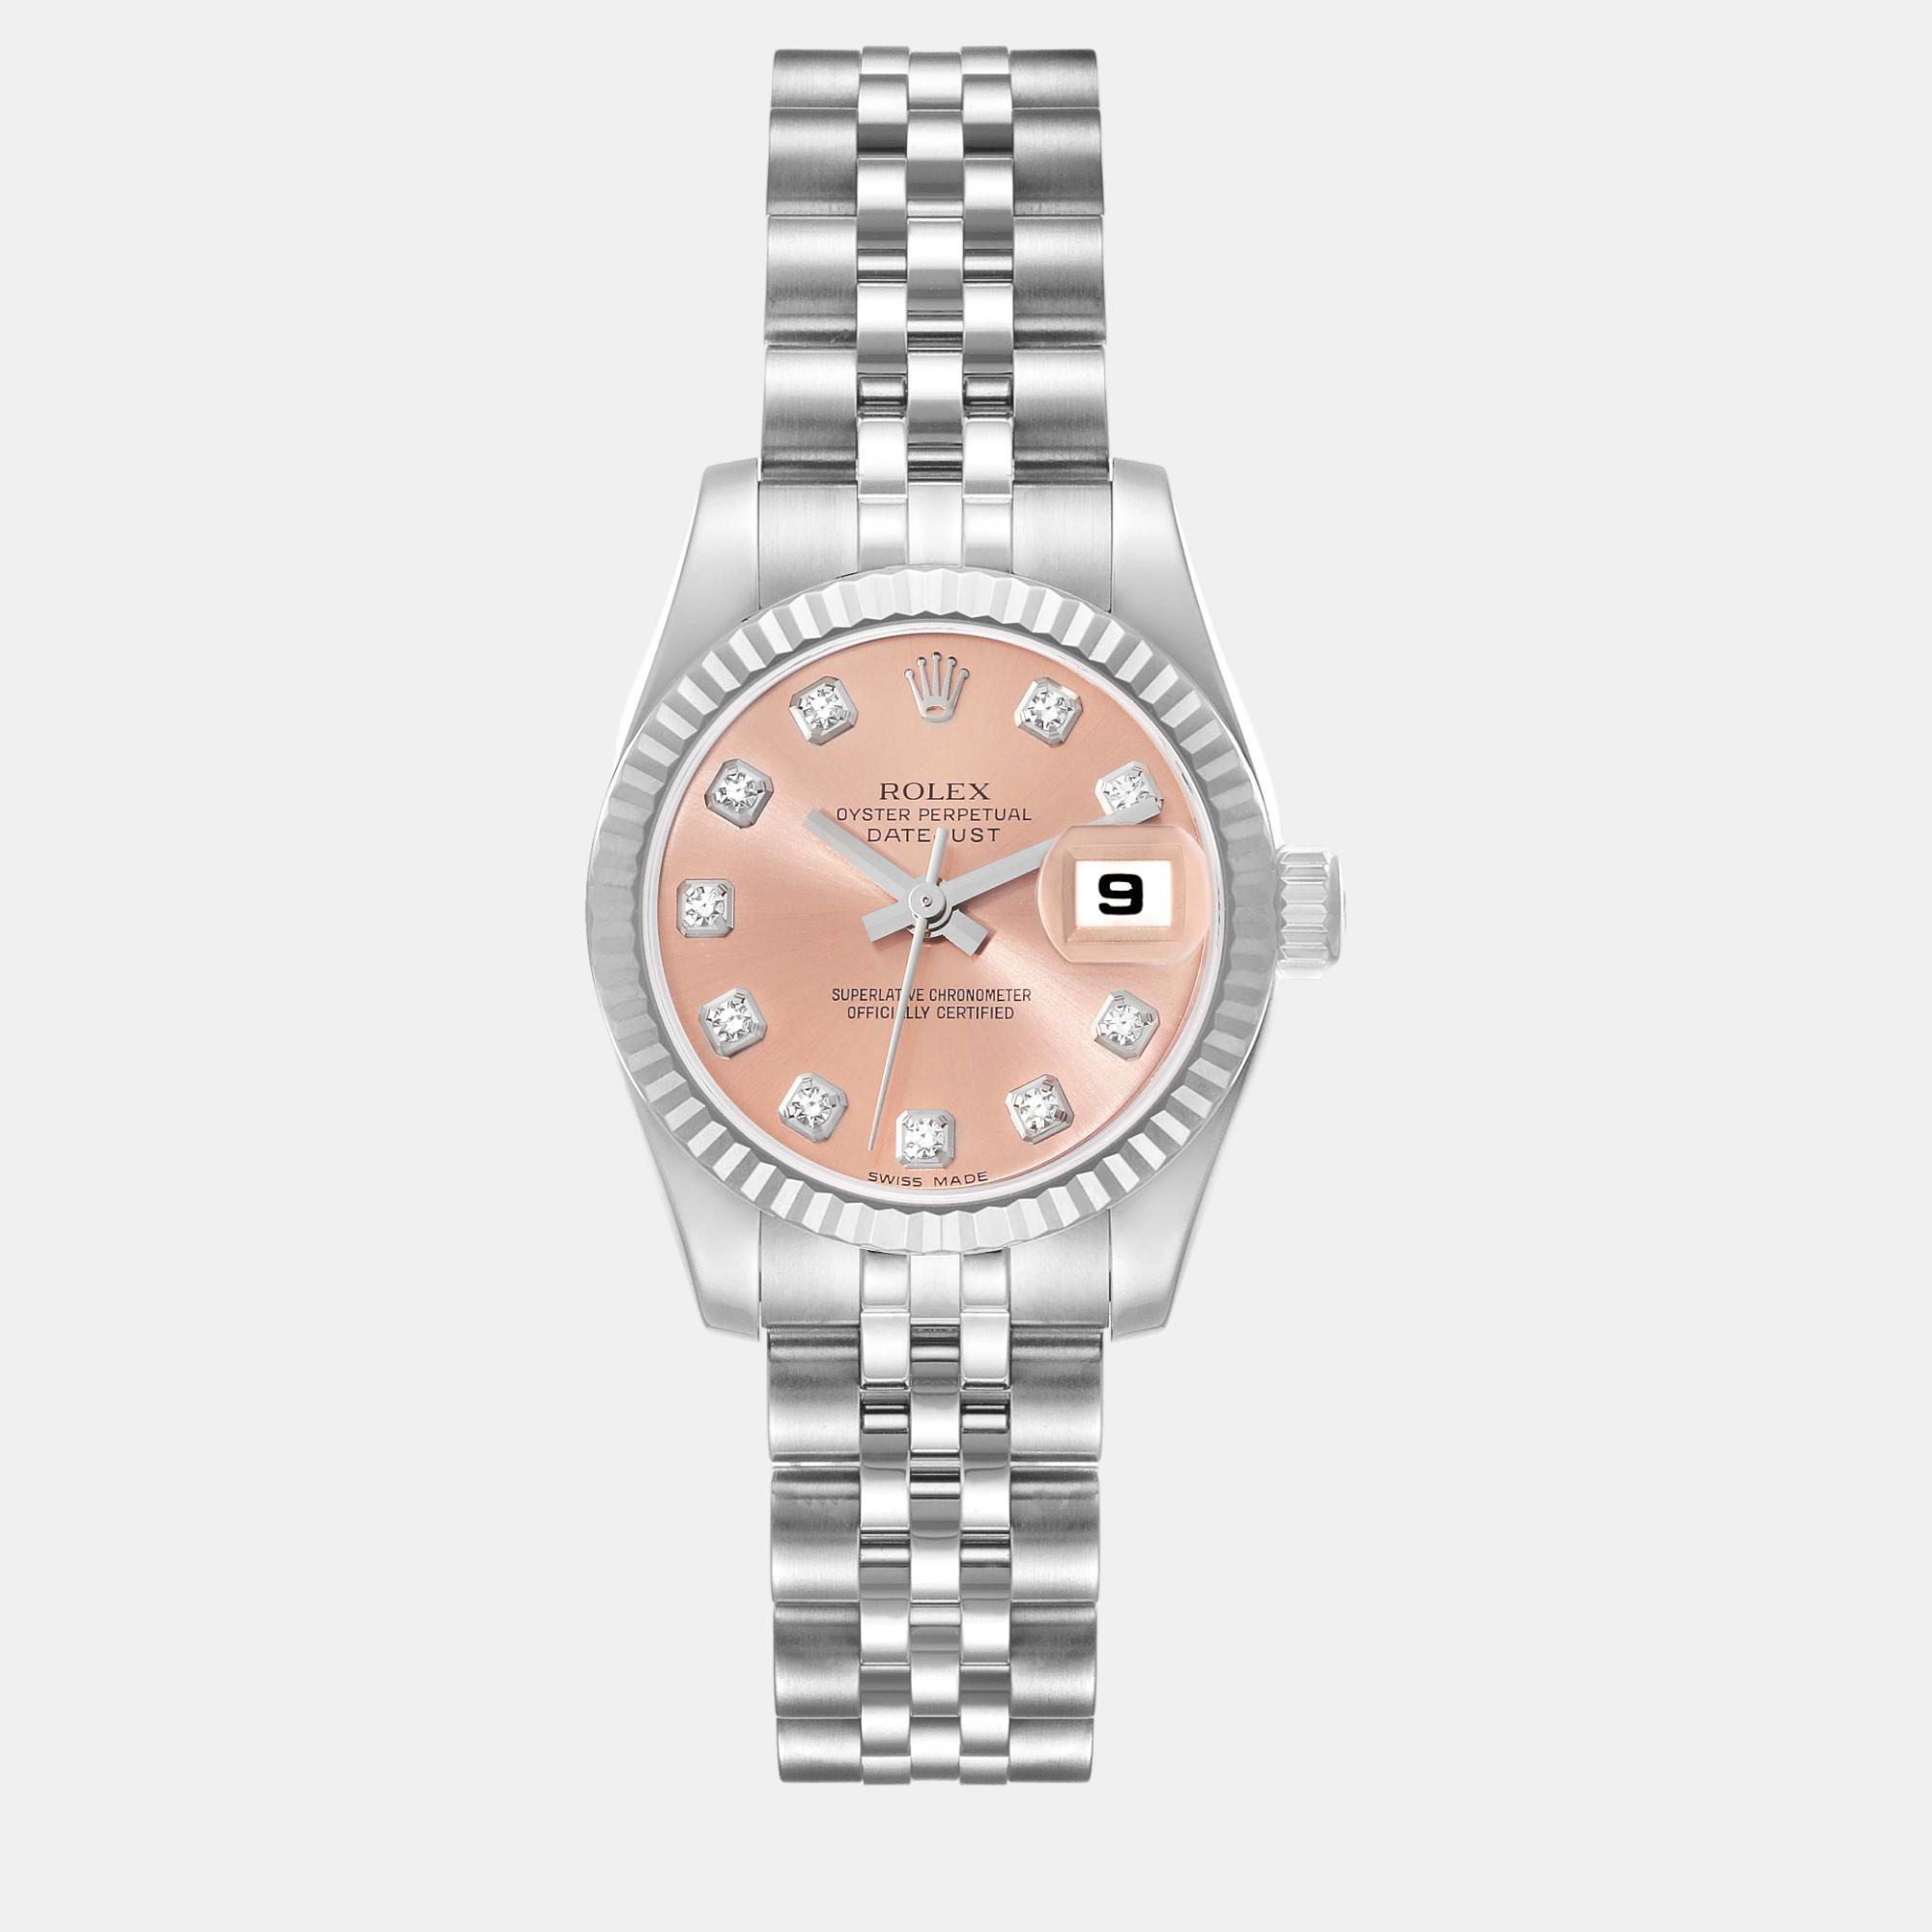 Rolex datejust steel white gold pink diamond dial ladies watch 26 mm